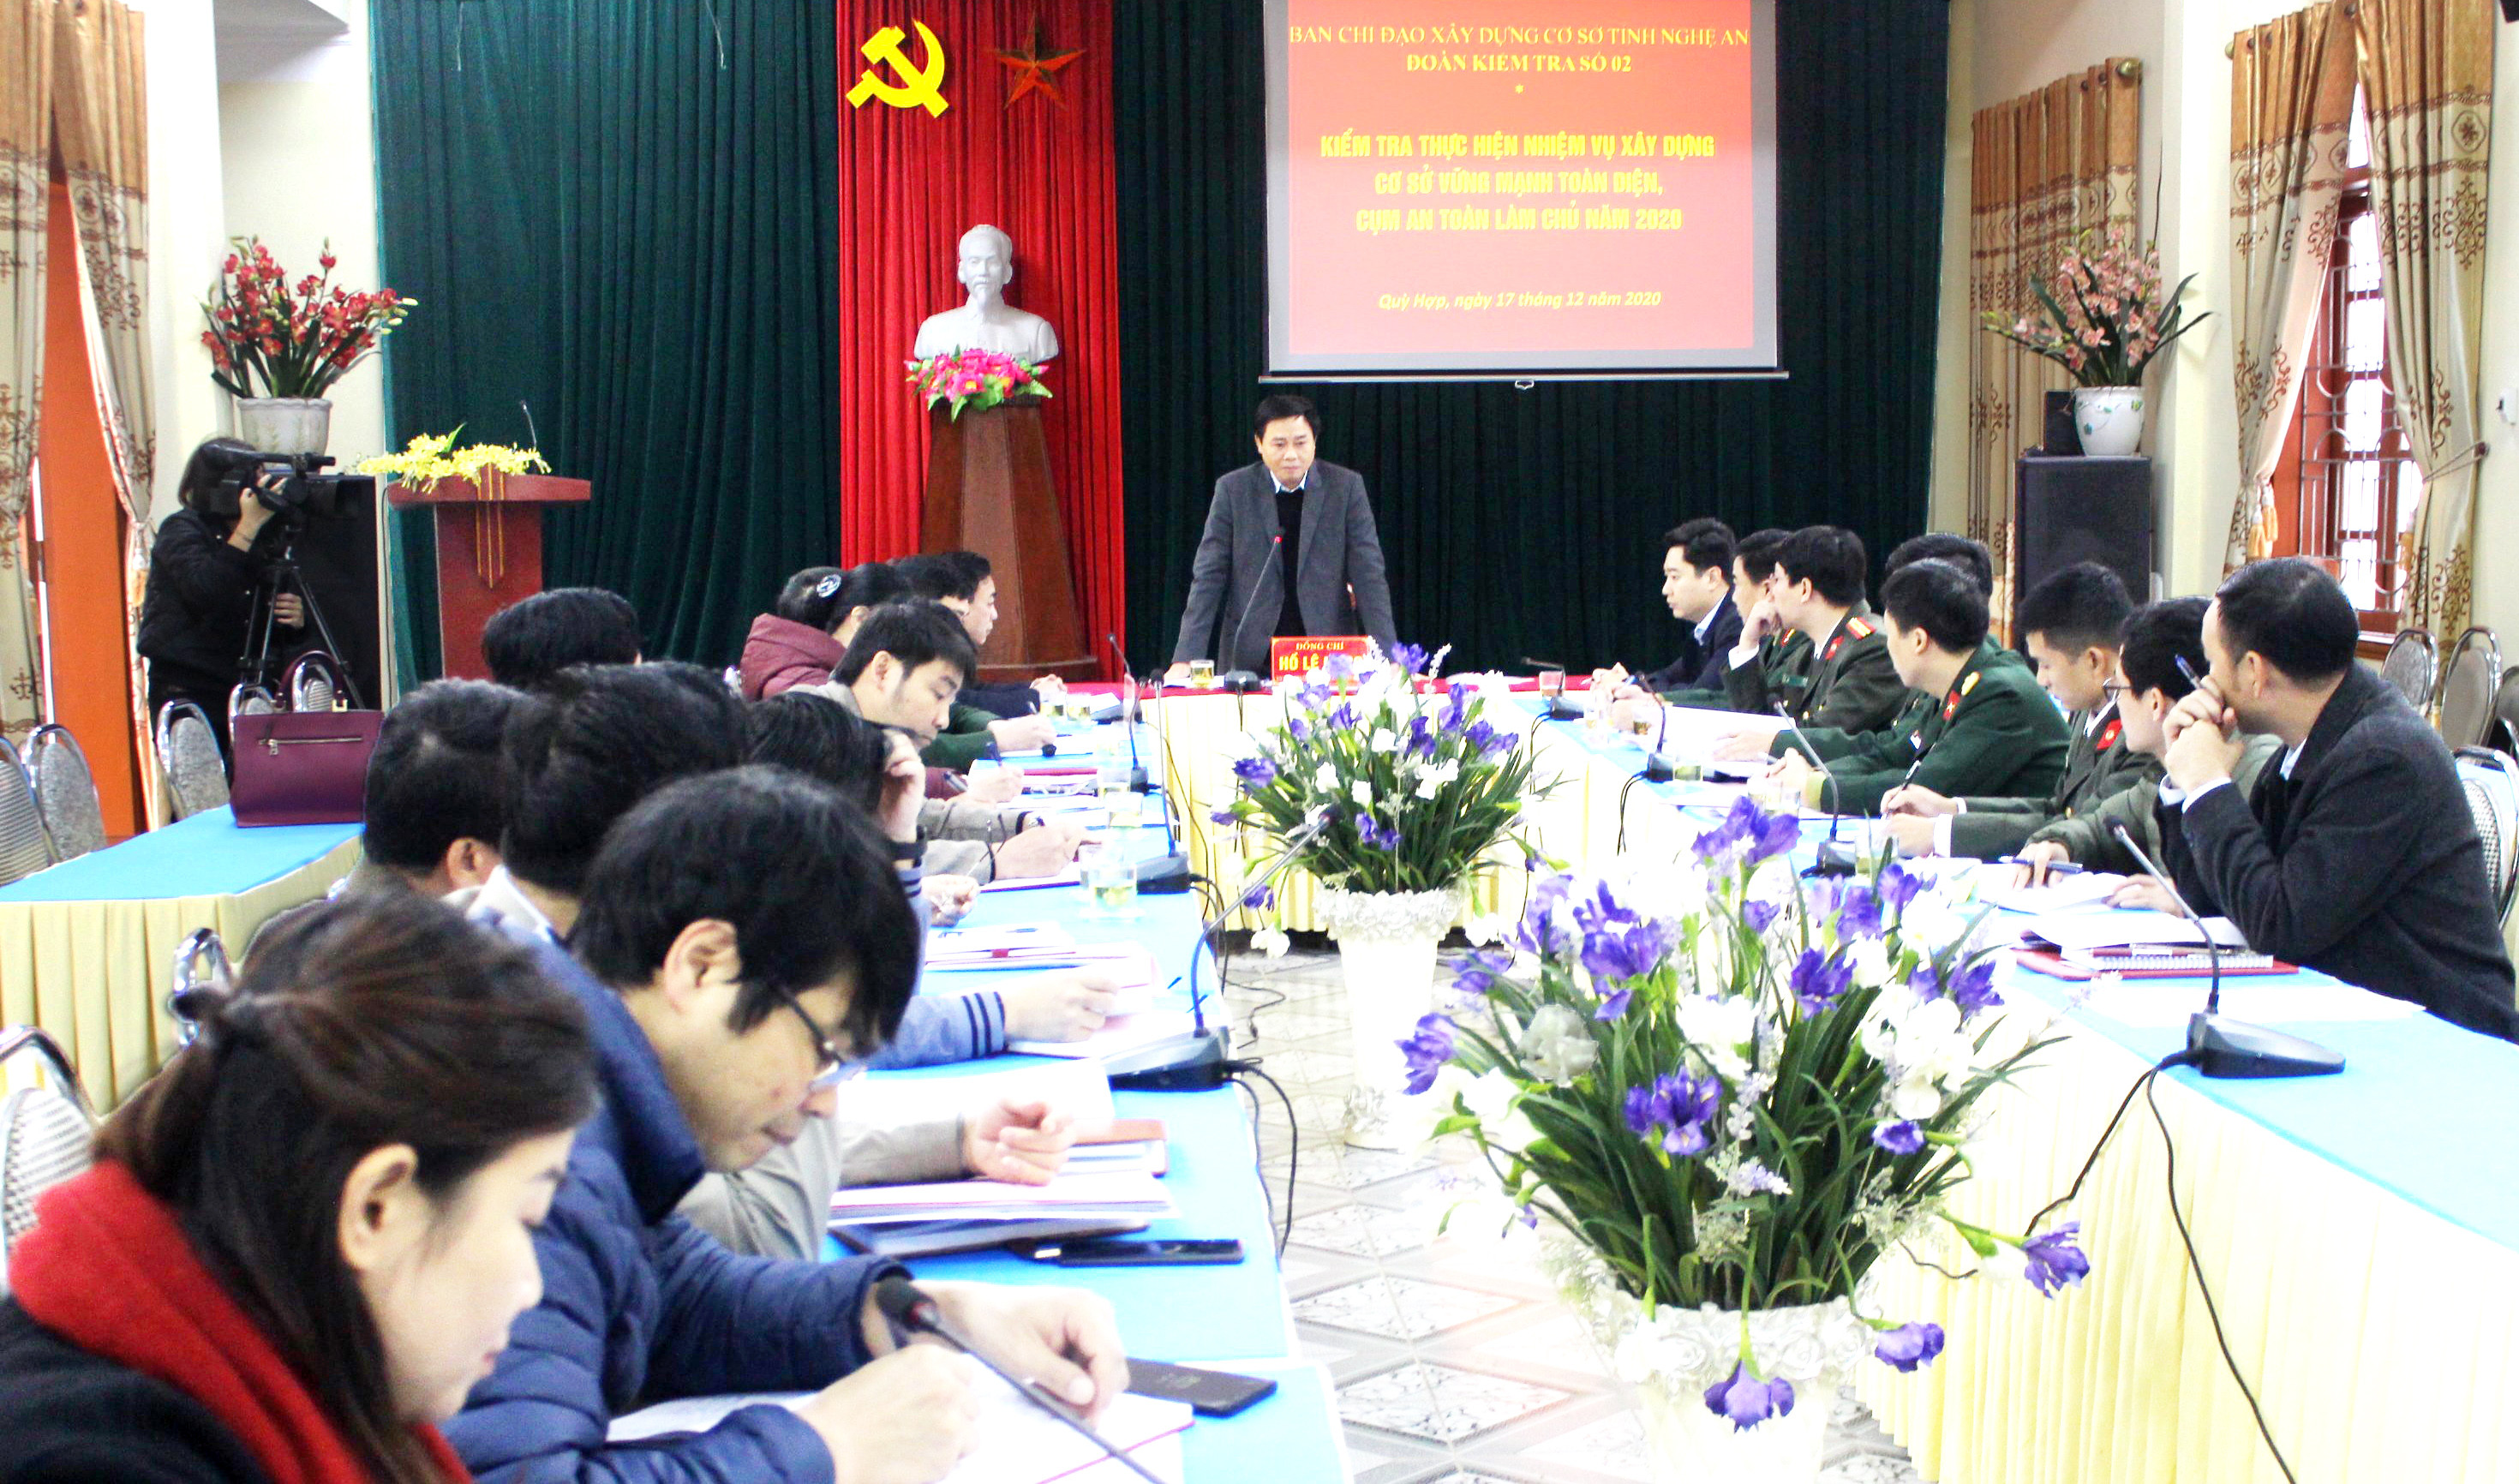 Quang cảnh buổi làm việc giữa đoàn kiểm tra của tỉnh với lãnh đạo huyện Quỳ Hợp. Ảnh Minh Nguyệt